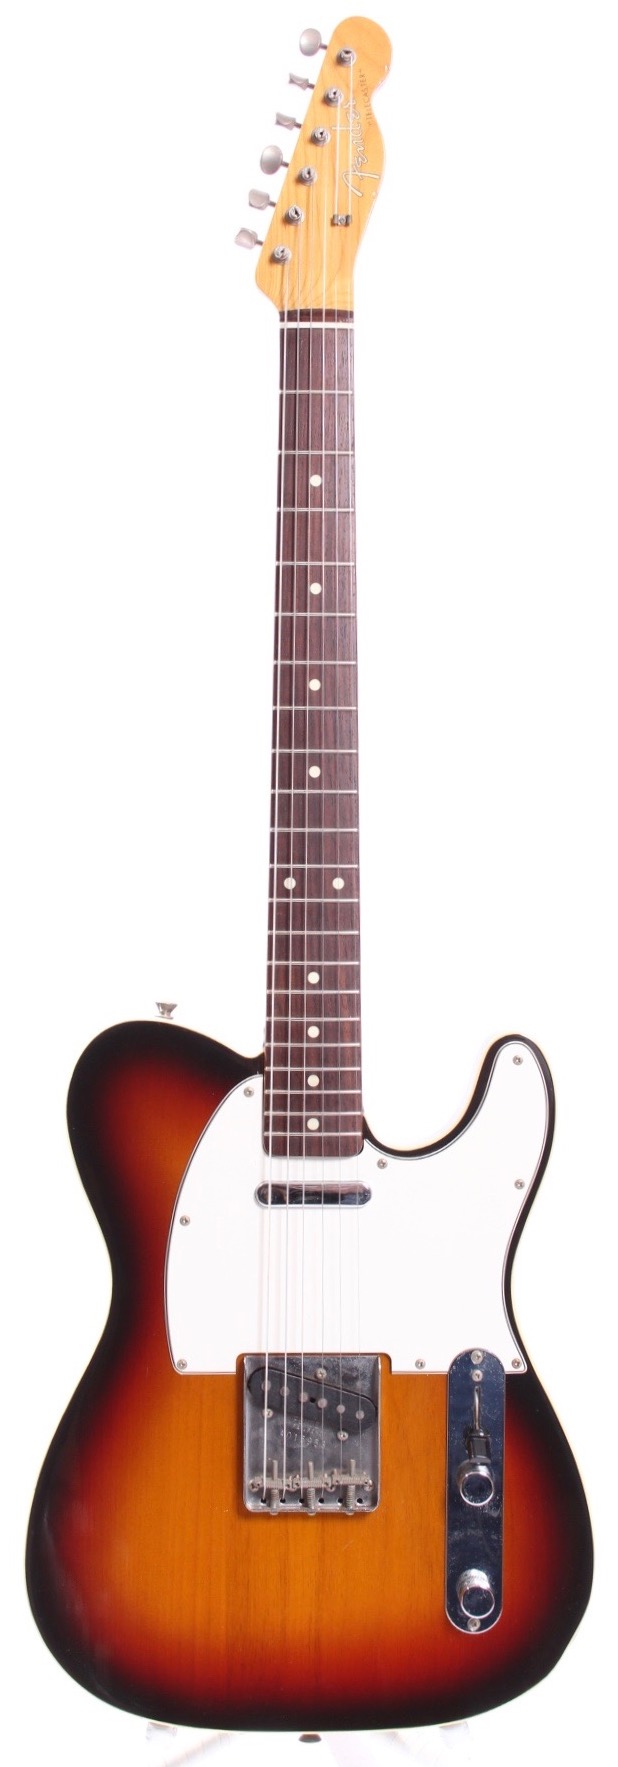 Fender Telecaster Custom Texas Specials 1997 Sunburst Guitar For Sale